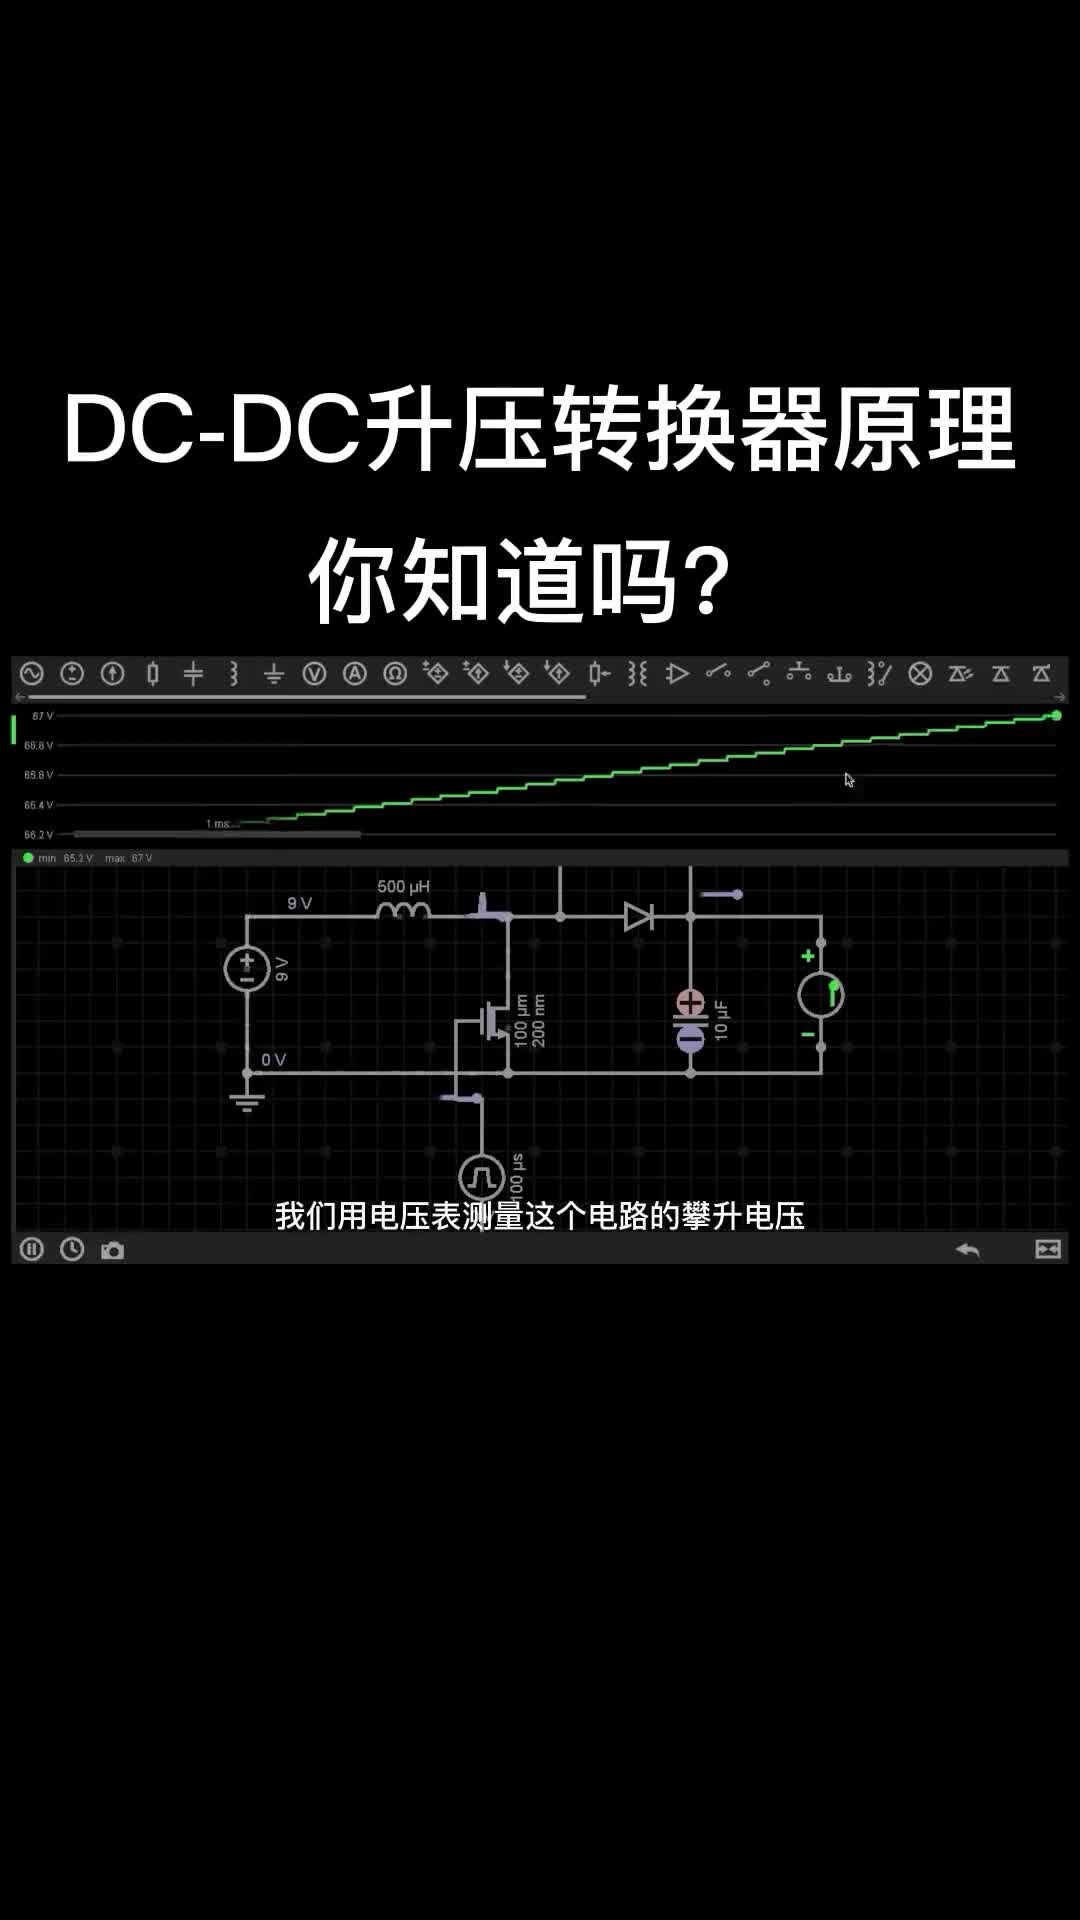 DC-DC升壓轉換器原理！#電路原理 